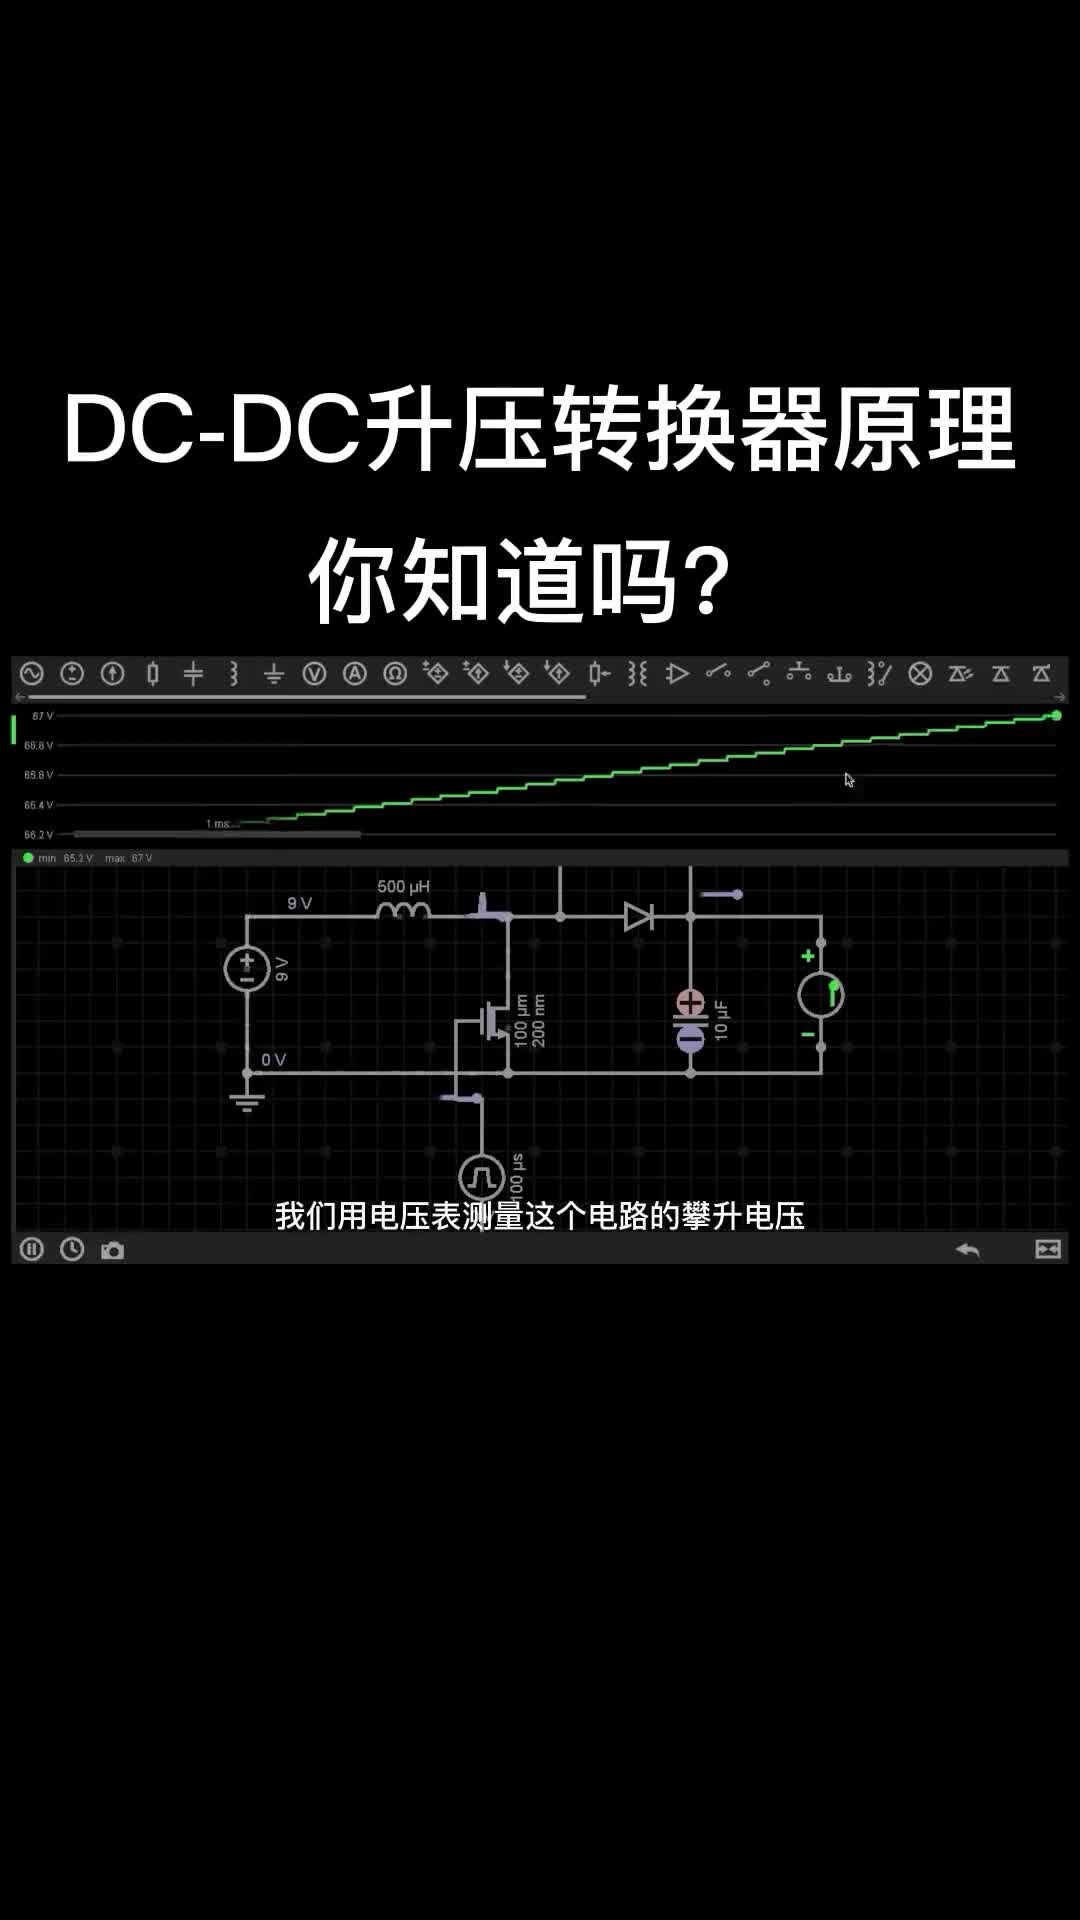 DC-DC升壓轉換器原理！#電路原理 